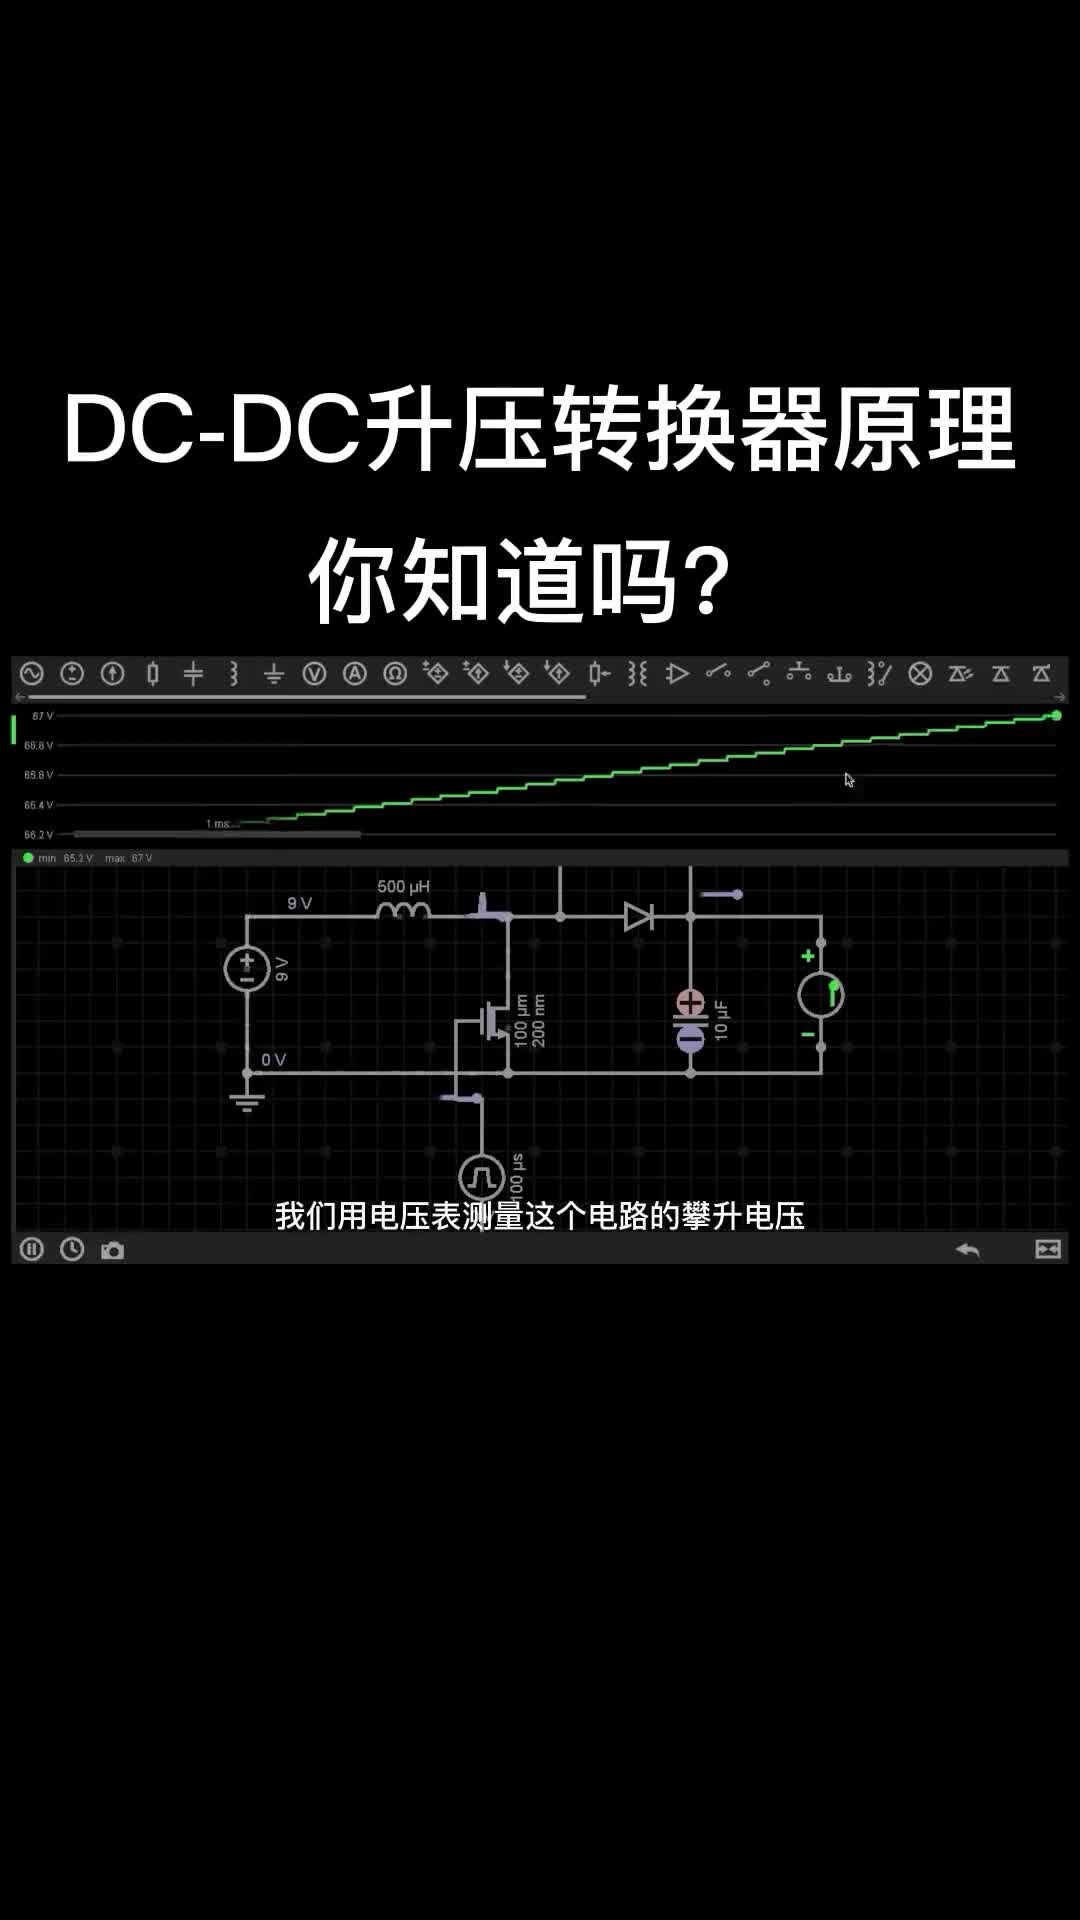 DC-DC升壓轉換器原理！#電路原理 